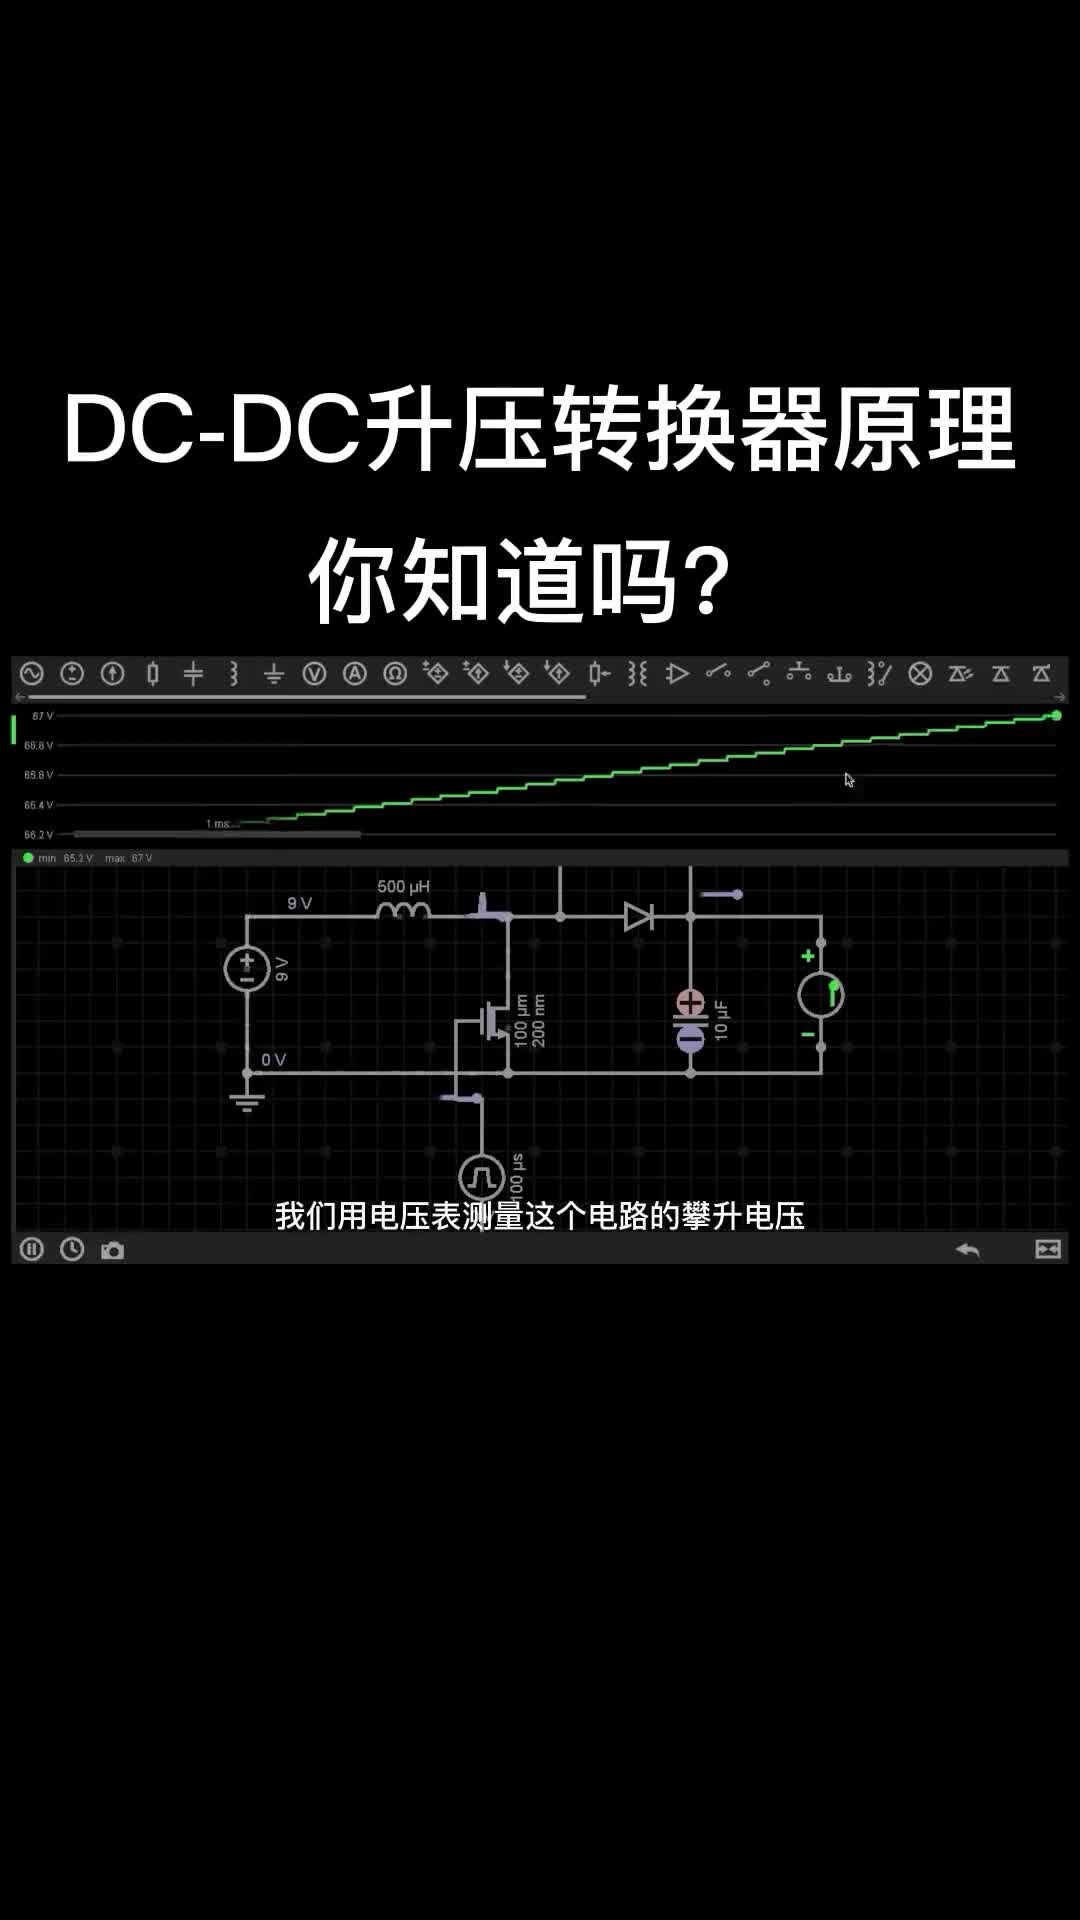 DC-DC升壓轉換器原理！#電路原理 